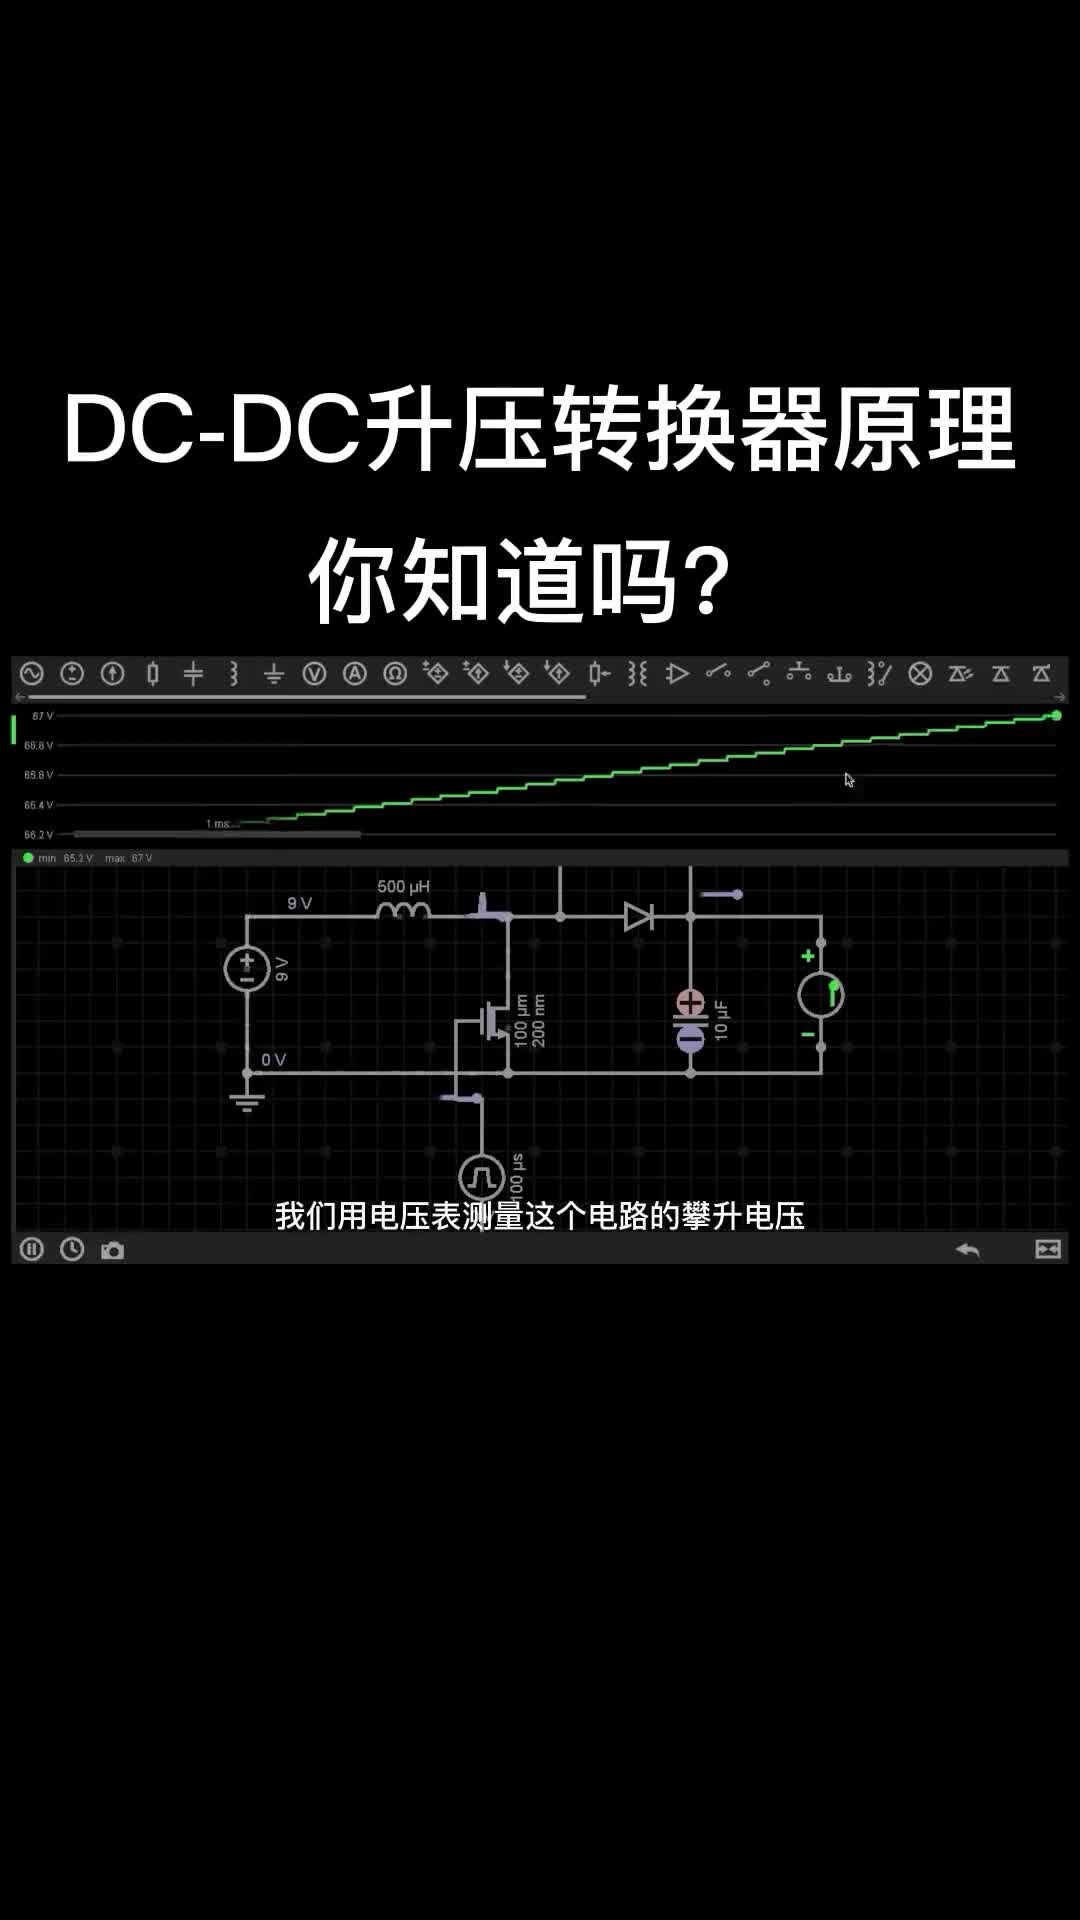 DC-DC升壓轉換器原理！#電路原理 